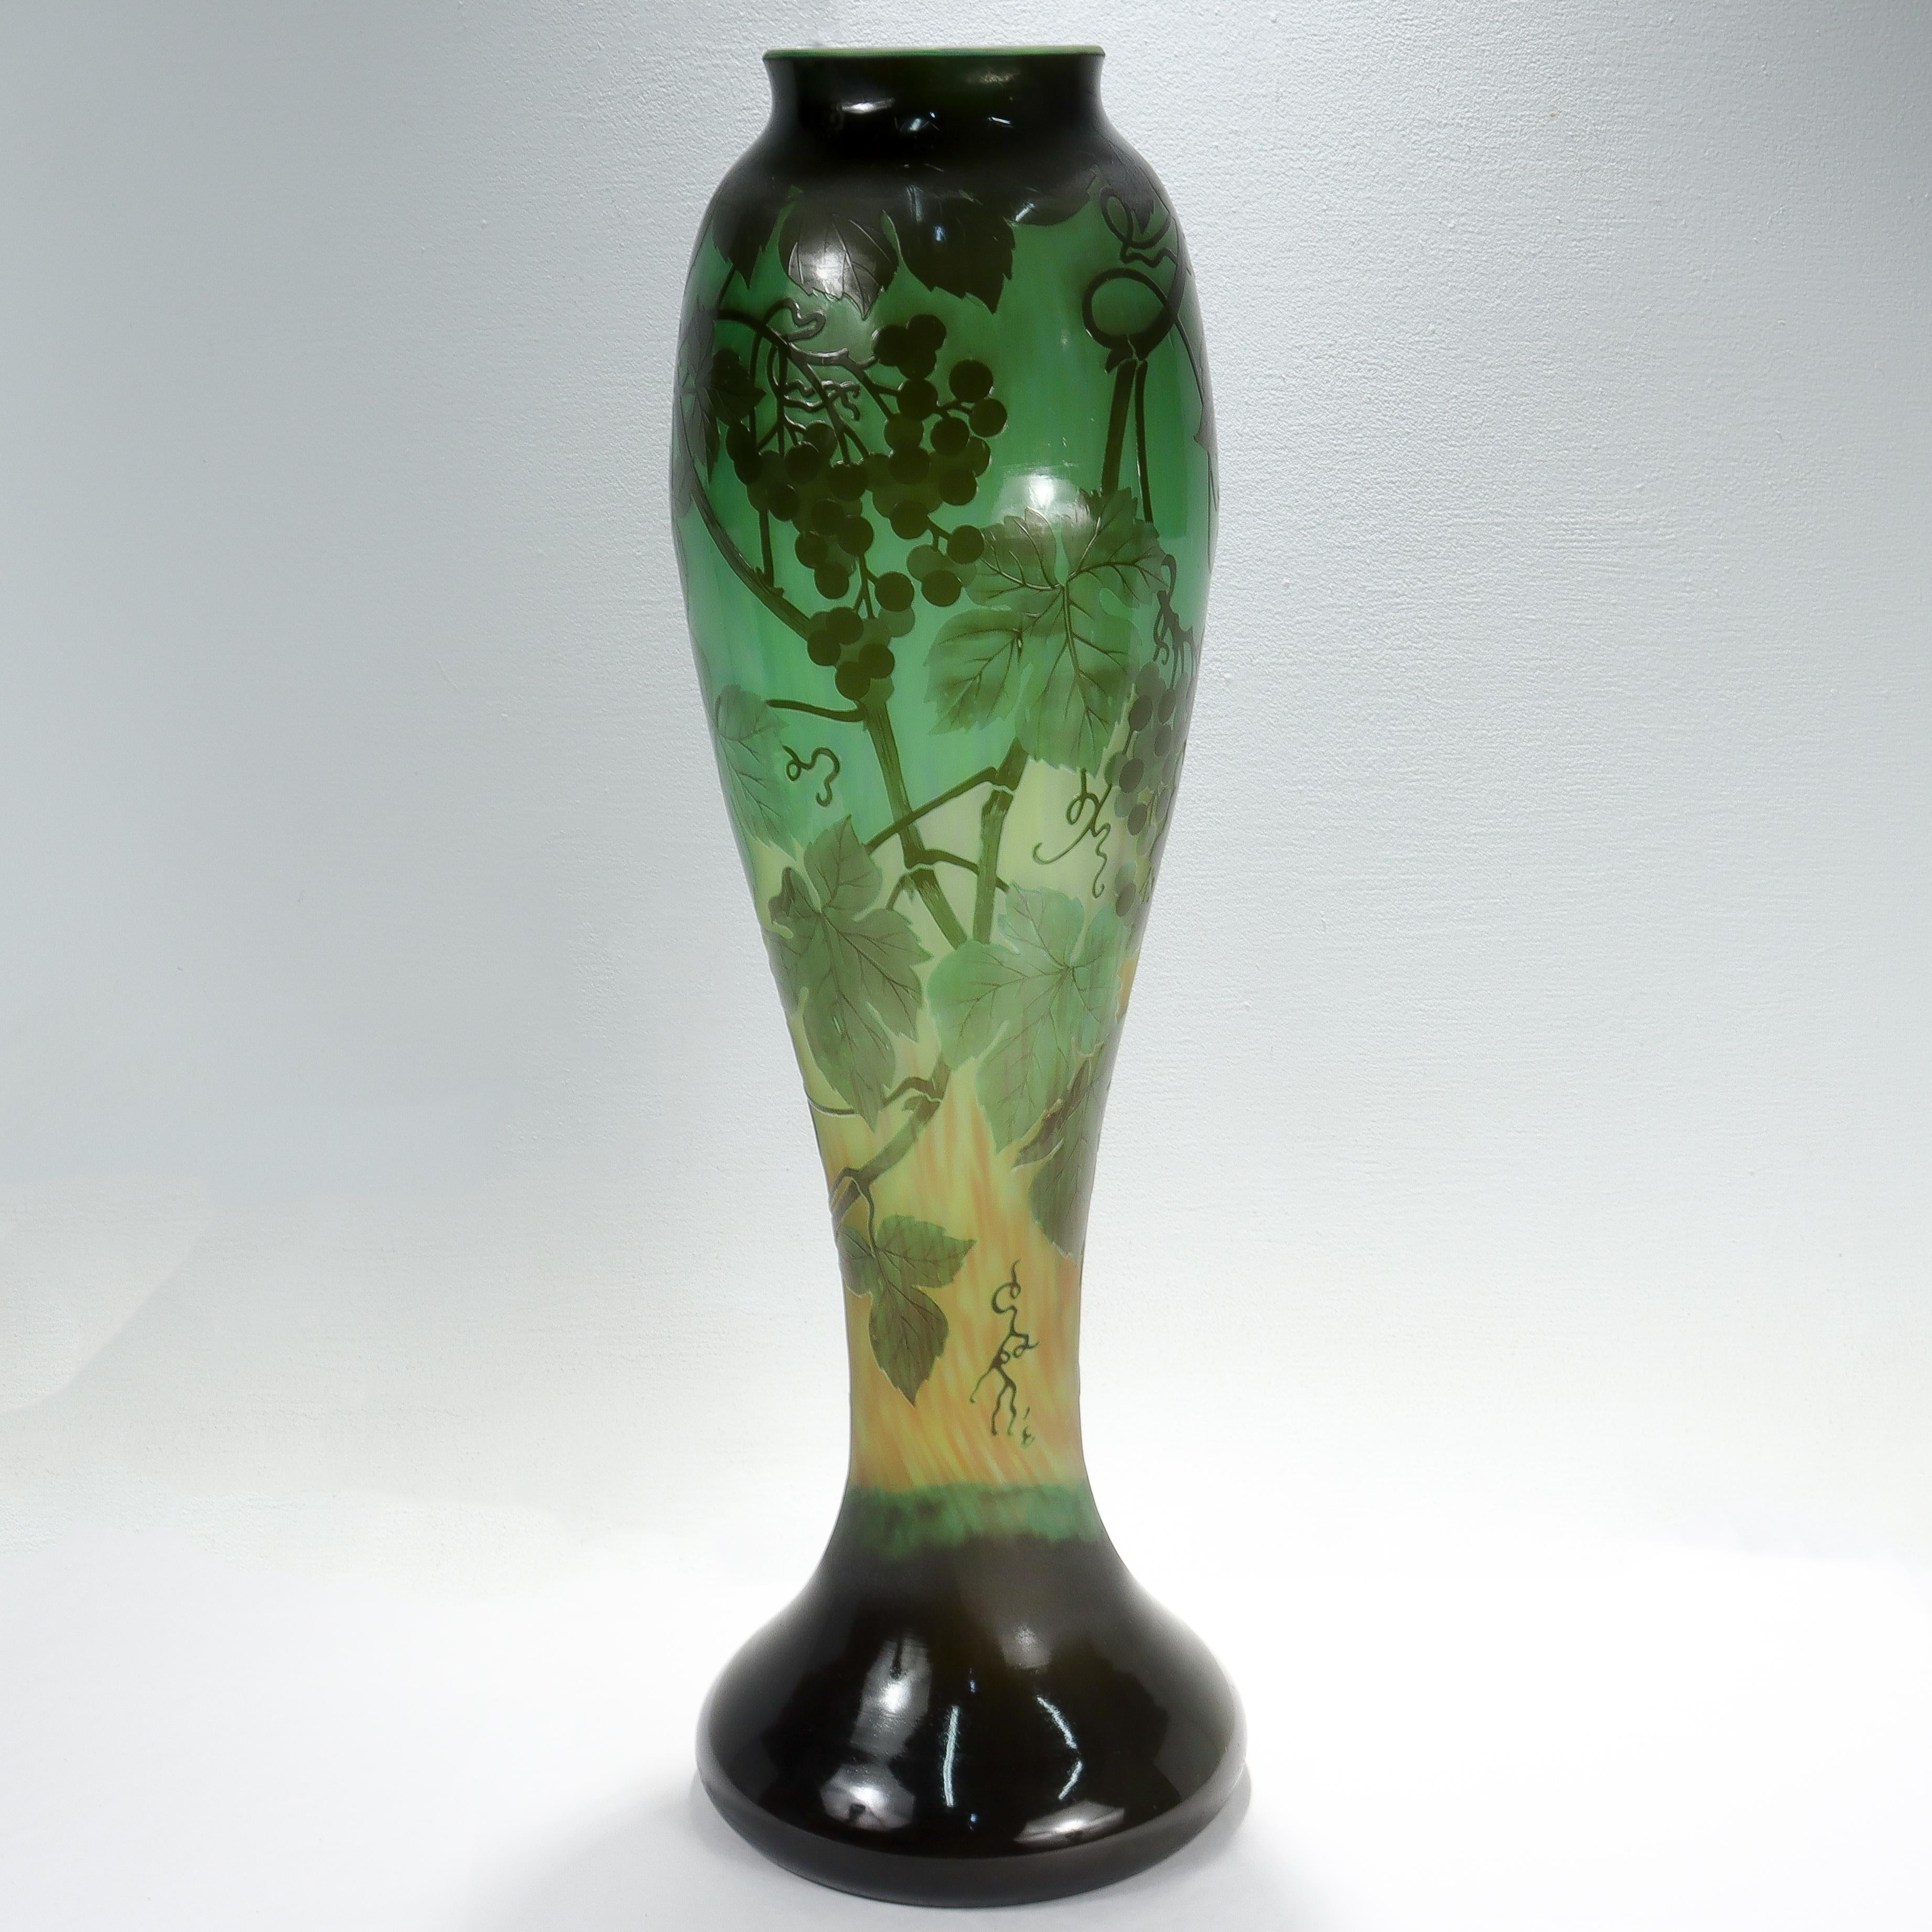 Eine feine, sehr großformatige antike französische Kunstglasvase.

In Grüntönen.

Mit säuregeschnittenen Kamee-Trauben, Weinblättern und Weinreben auf der Rückseite.

Signiert 